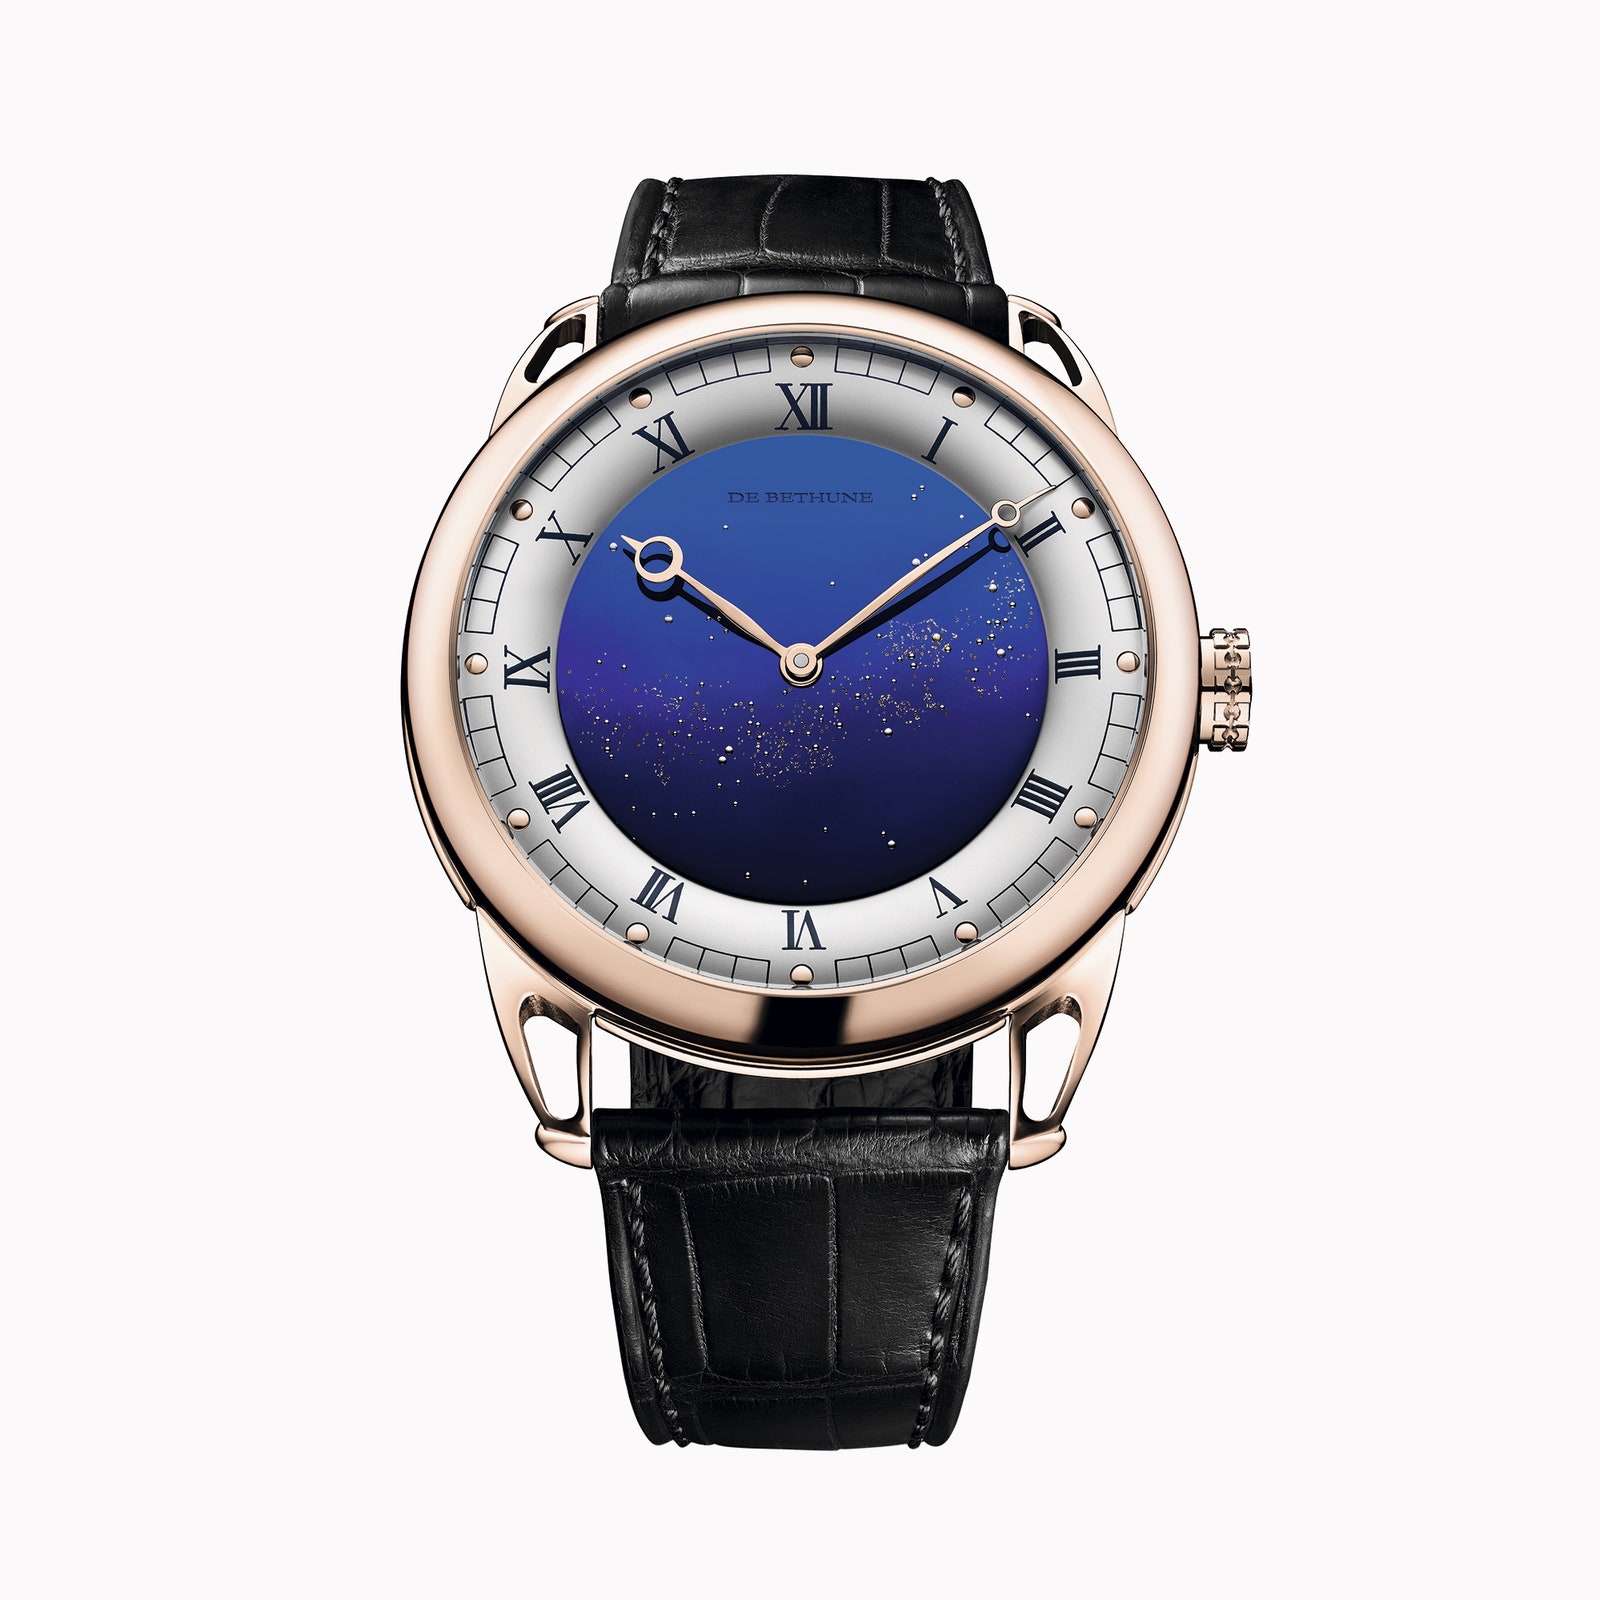 Звездное небо и розовое золото: De Bethune выпустили новую модель часов